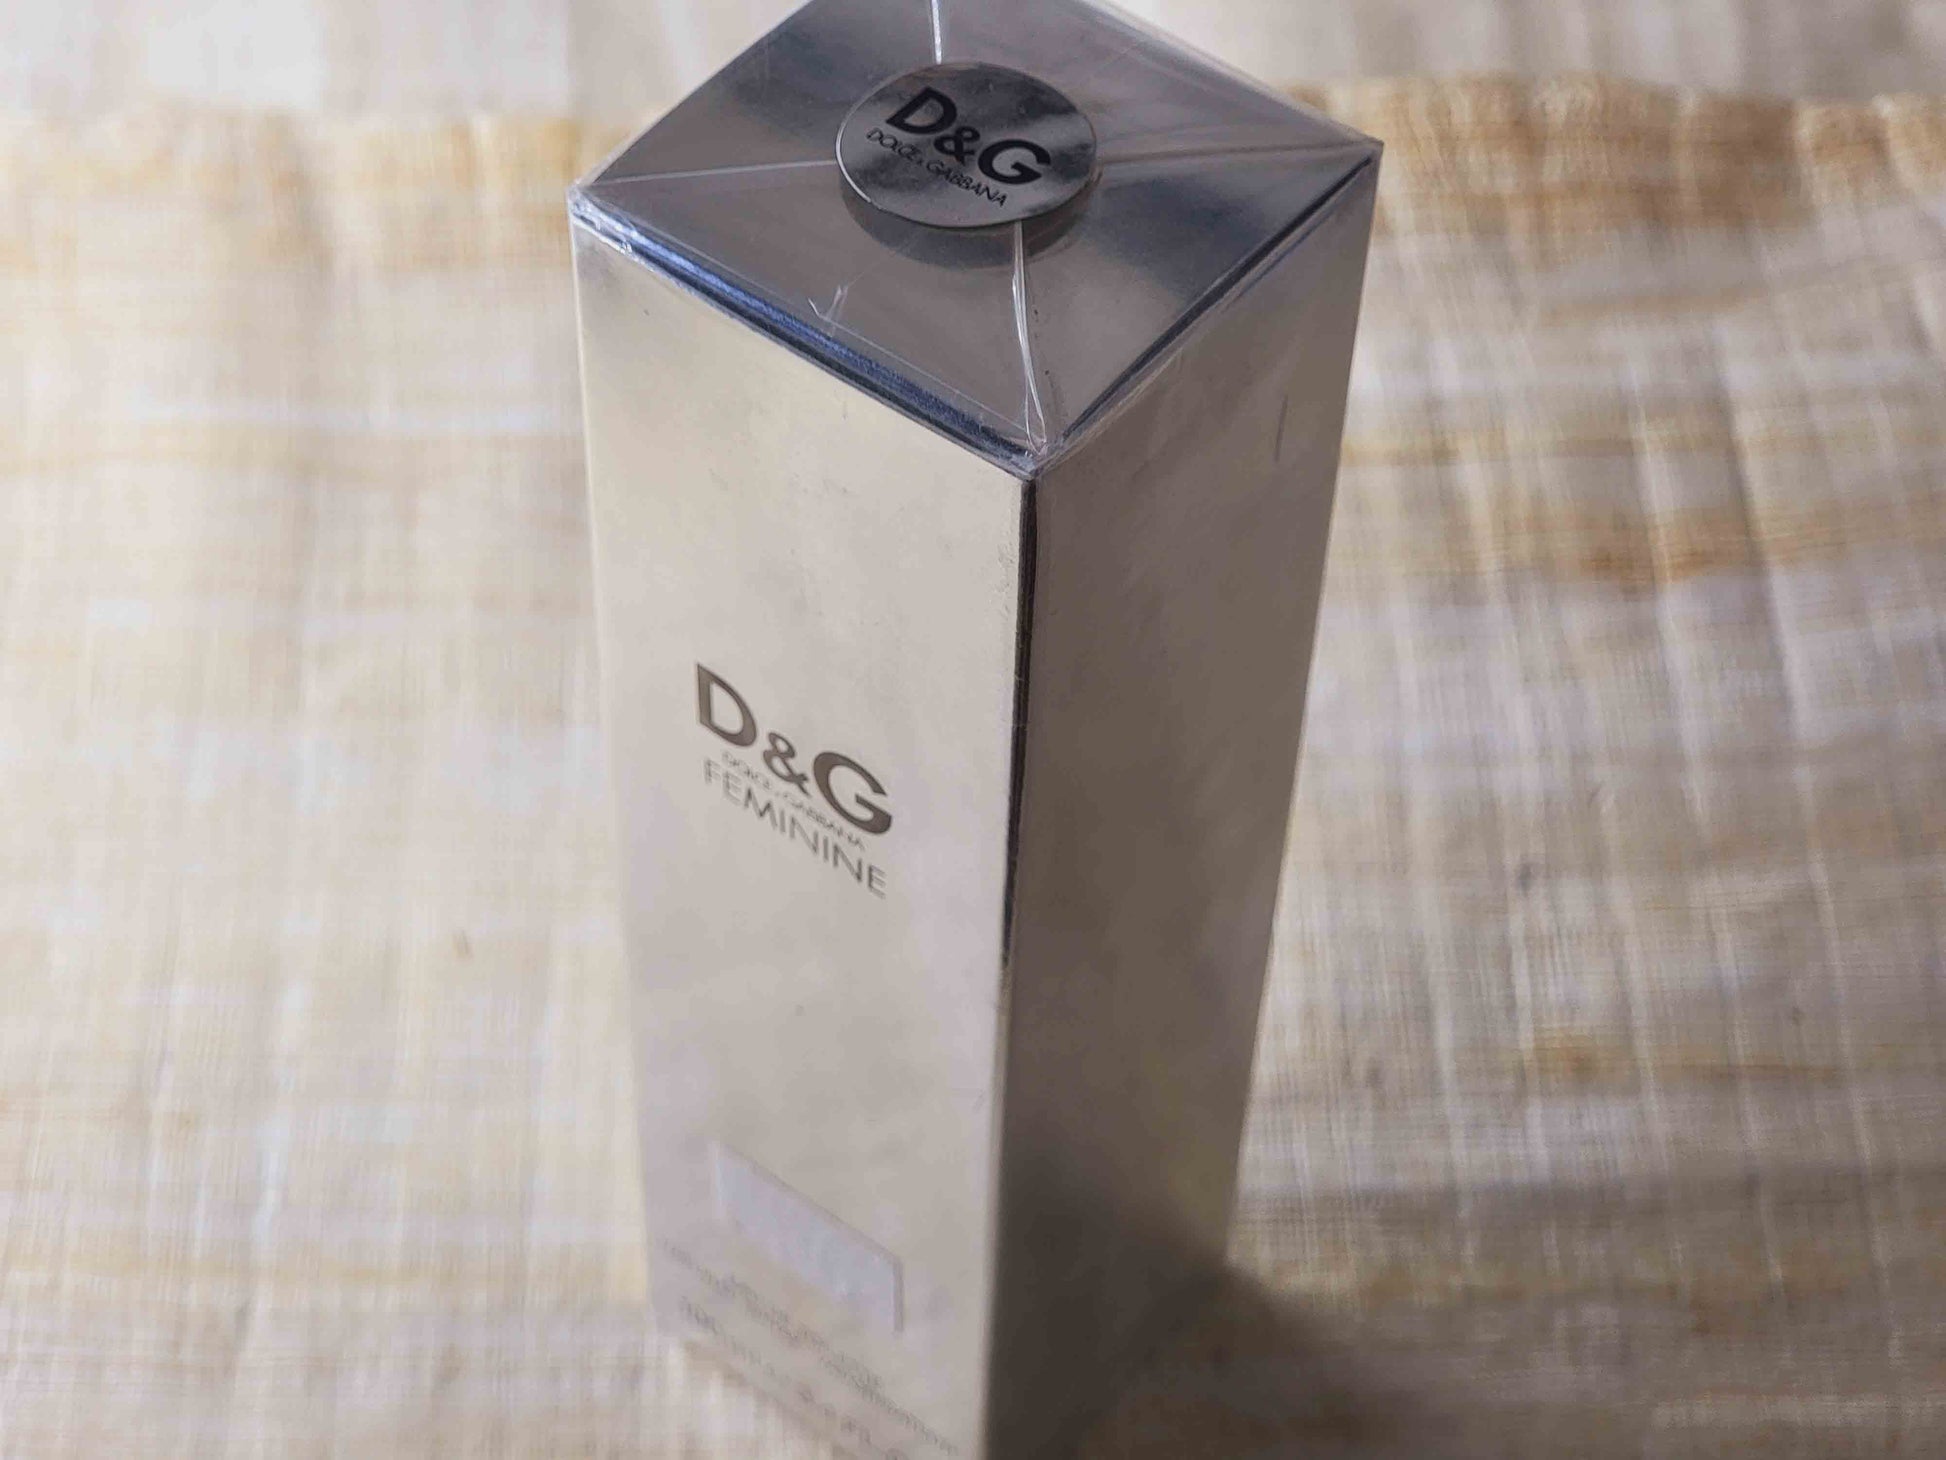 D&G Feminine by Dolce & Gabbana for Women EDT Spray 1.7 Oz –  FragranceOriginal